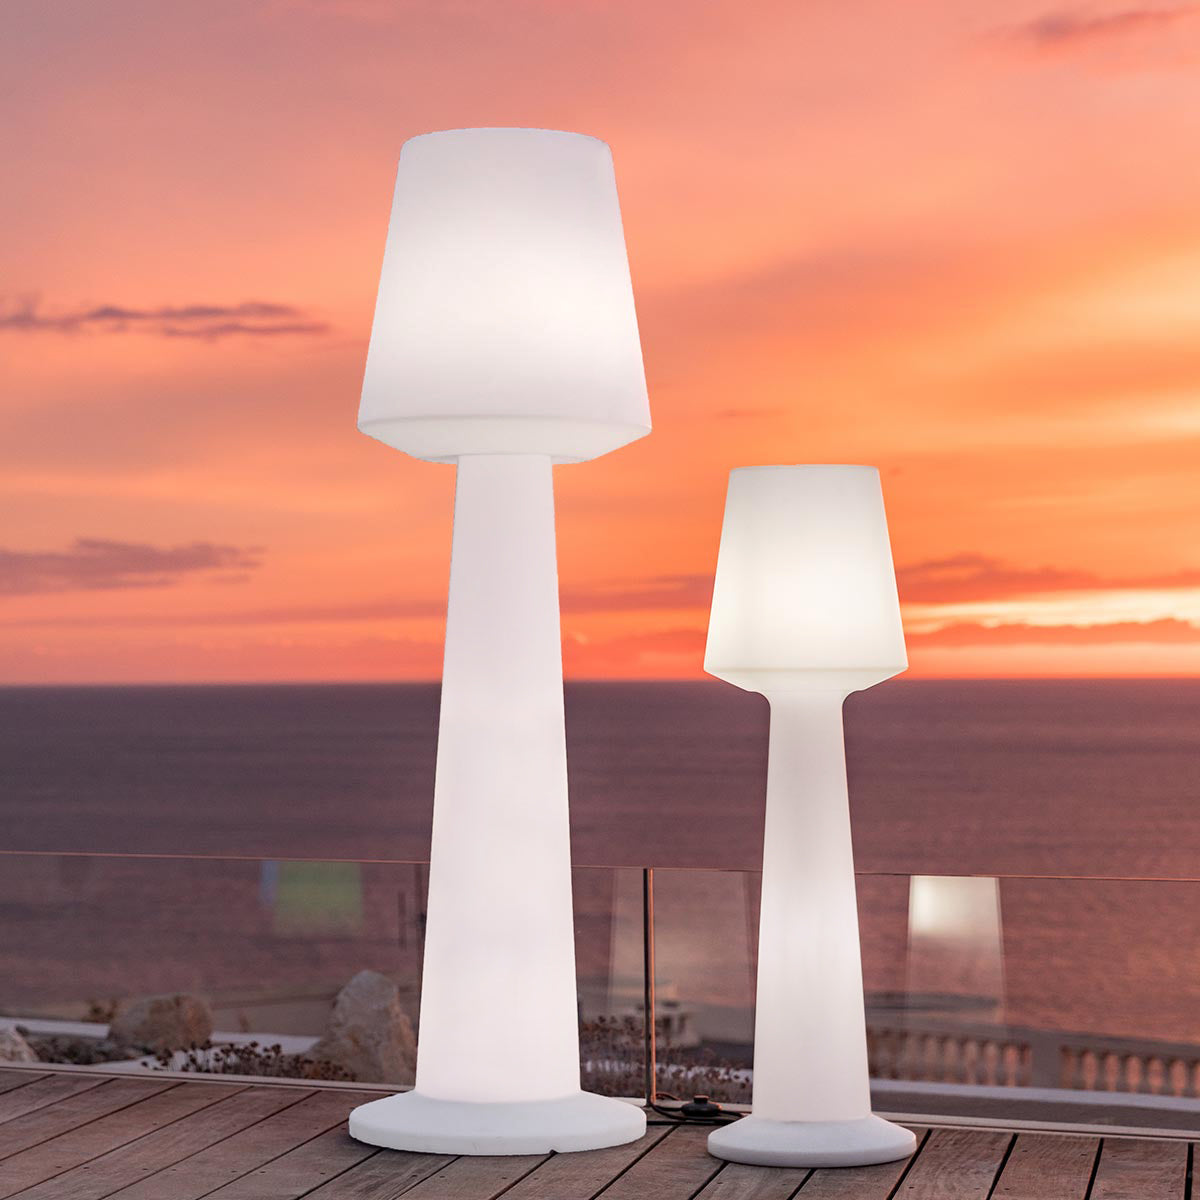 Designer wired light floor lamp for outdoor use powerful white LED lighting AUSTRAL H110cm E27 base